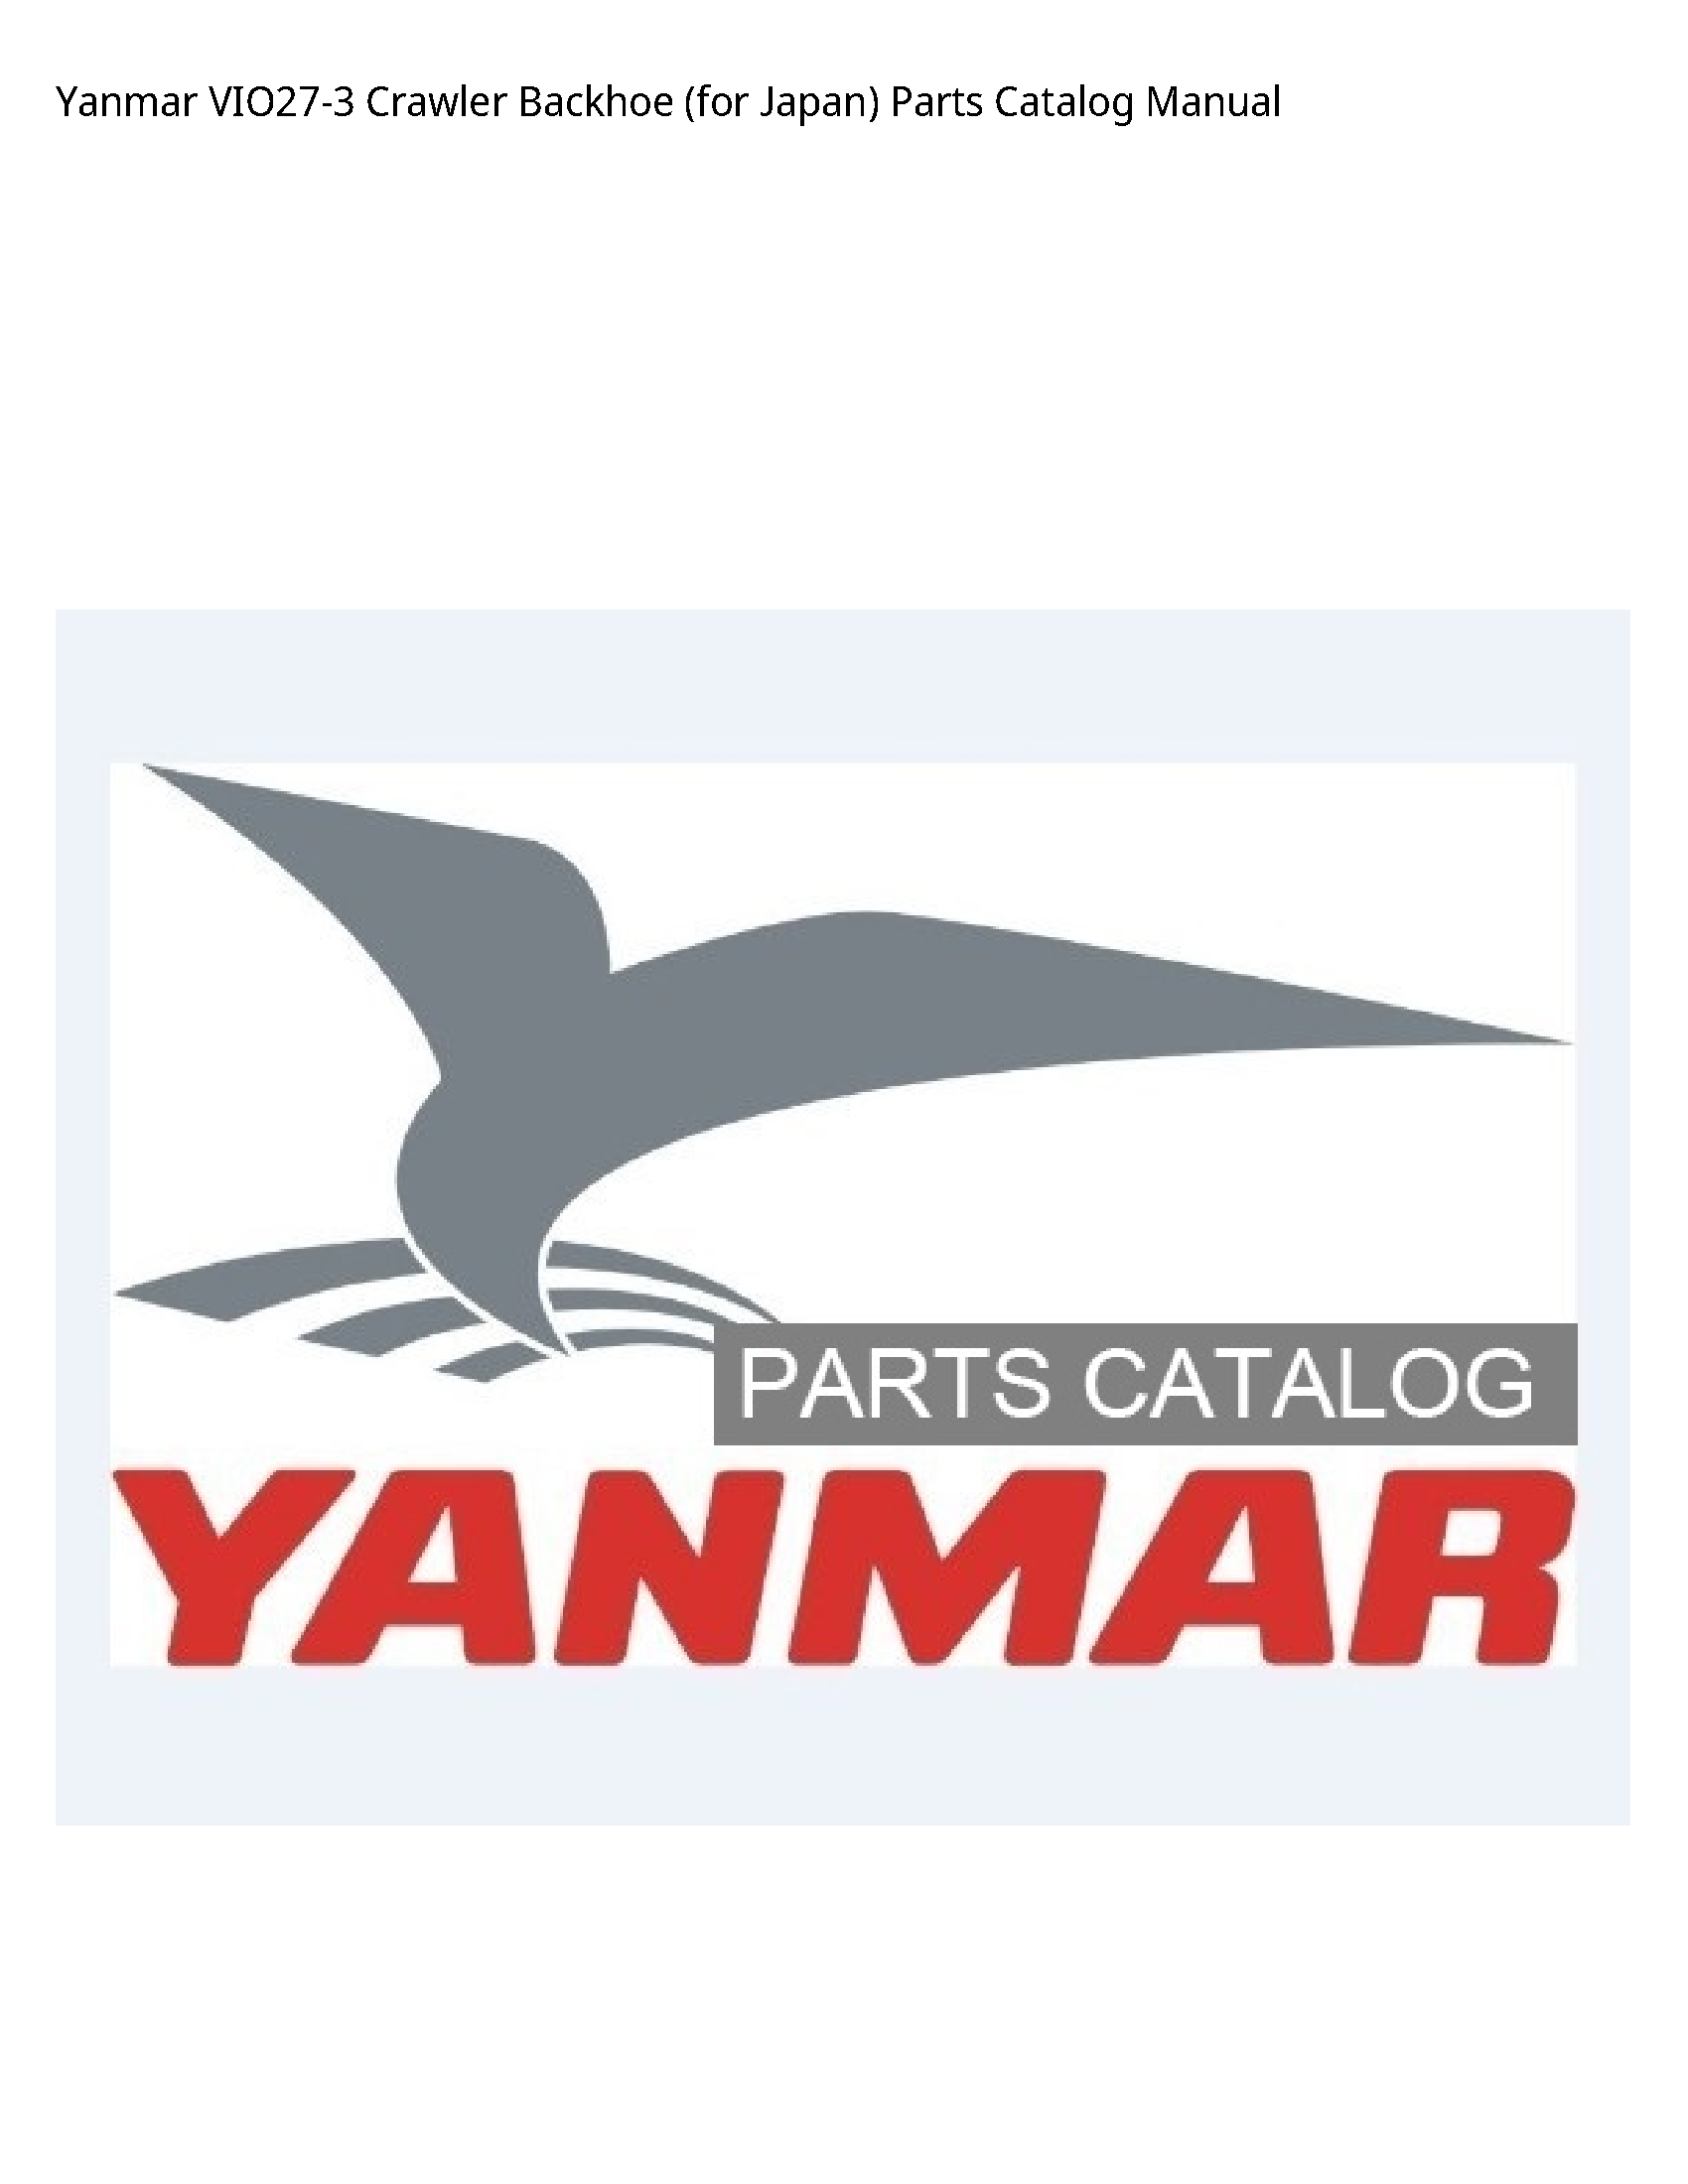 Yanmar VIO27-3 Crawler Backhoe (for Japan) Parts Catalog manual